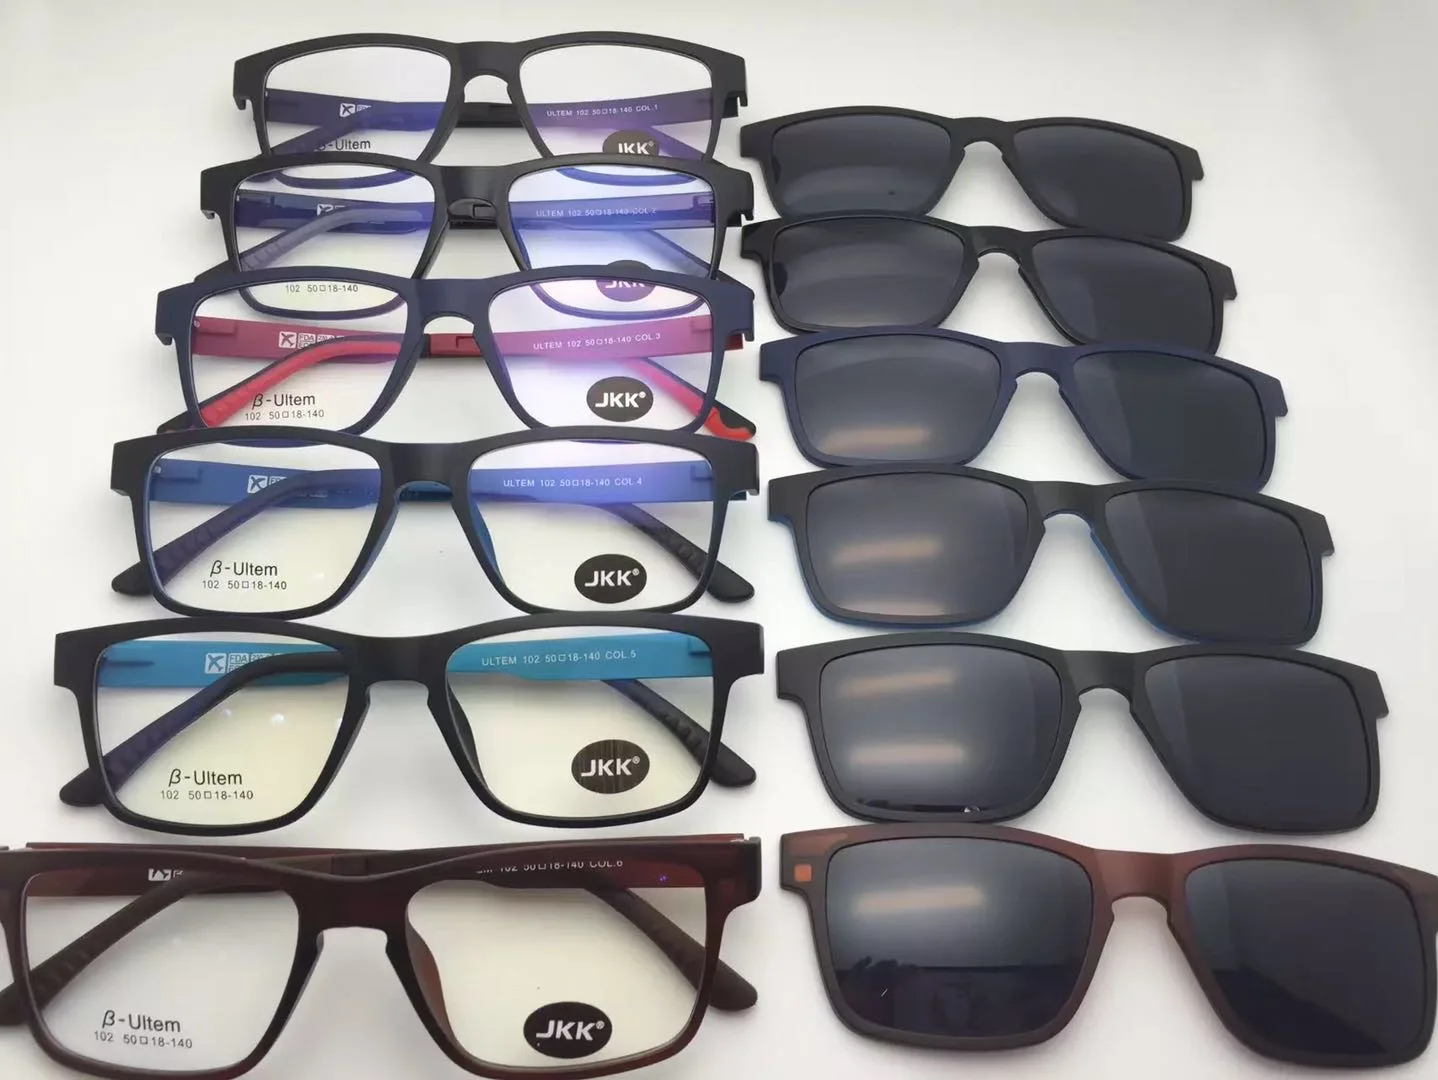 

Очки JKK Ultem 102 квадратные магнитные оправы для очков с зажимом один комплект очков для близорукости солнцезащитные очки